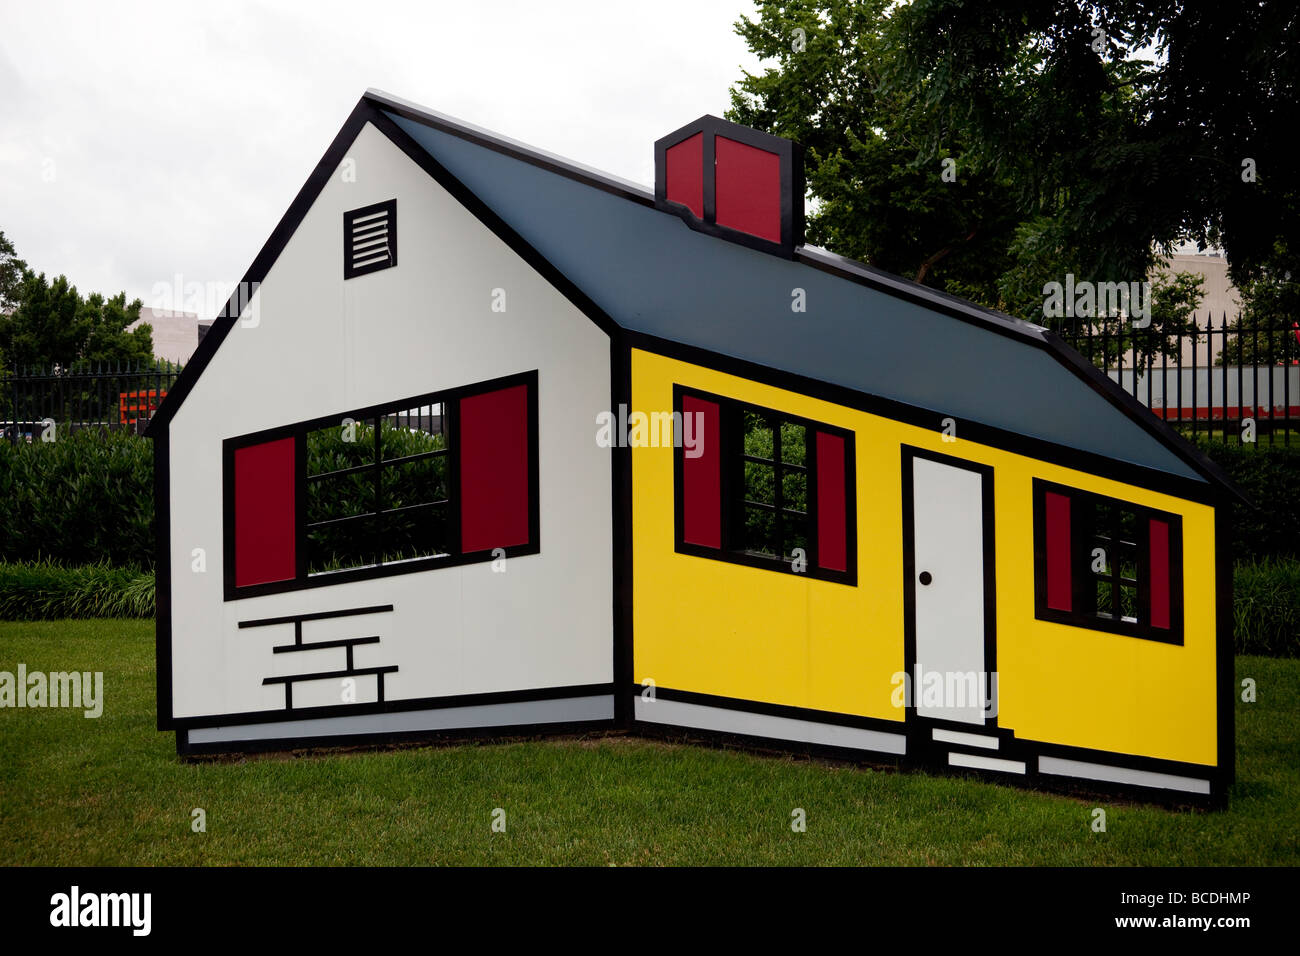 House I by Roy Lichtenstein, National Gallery of Art sculpture garden, Washington DC, USA Stock Photo